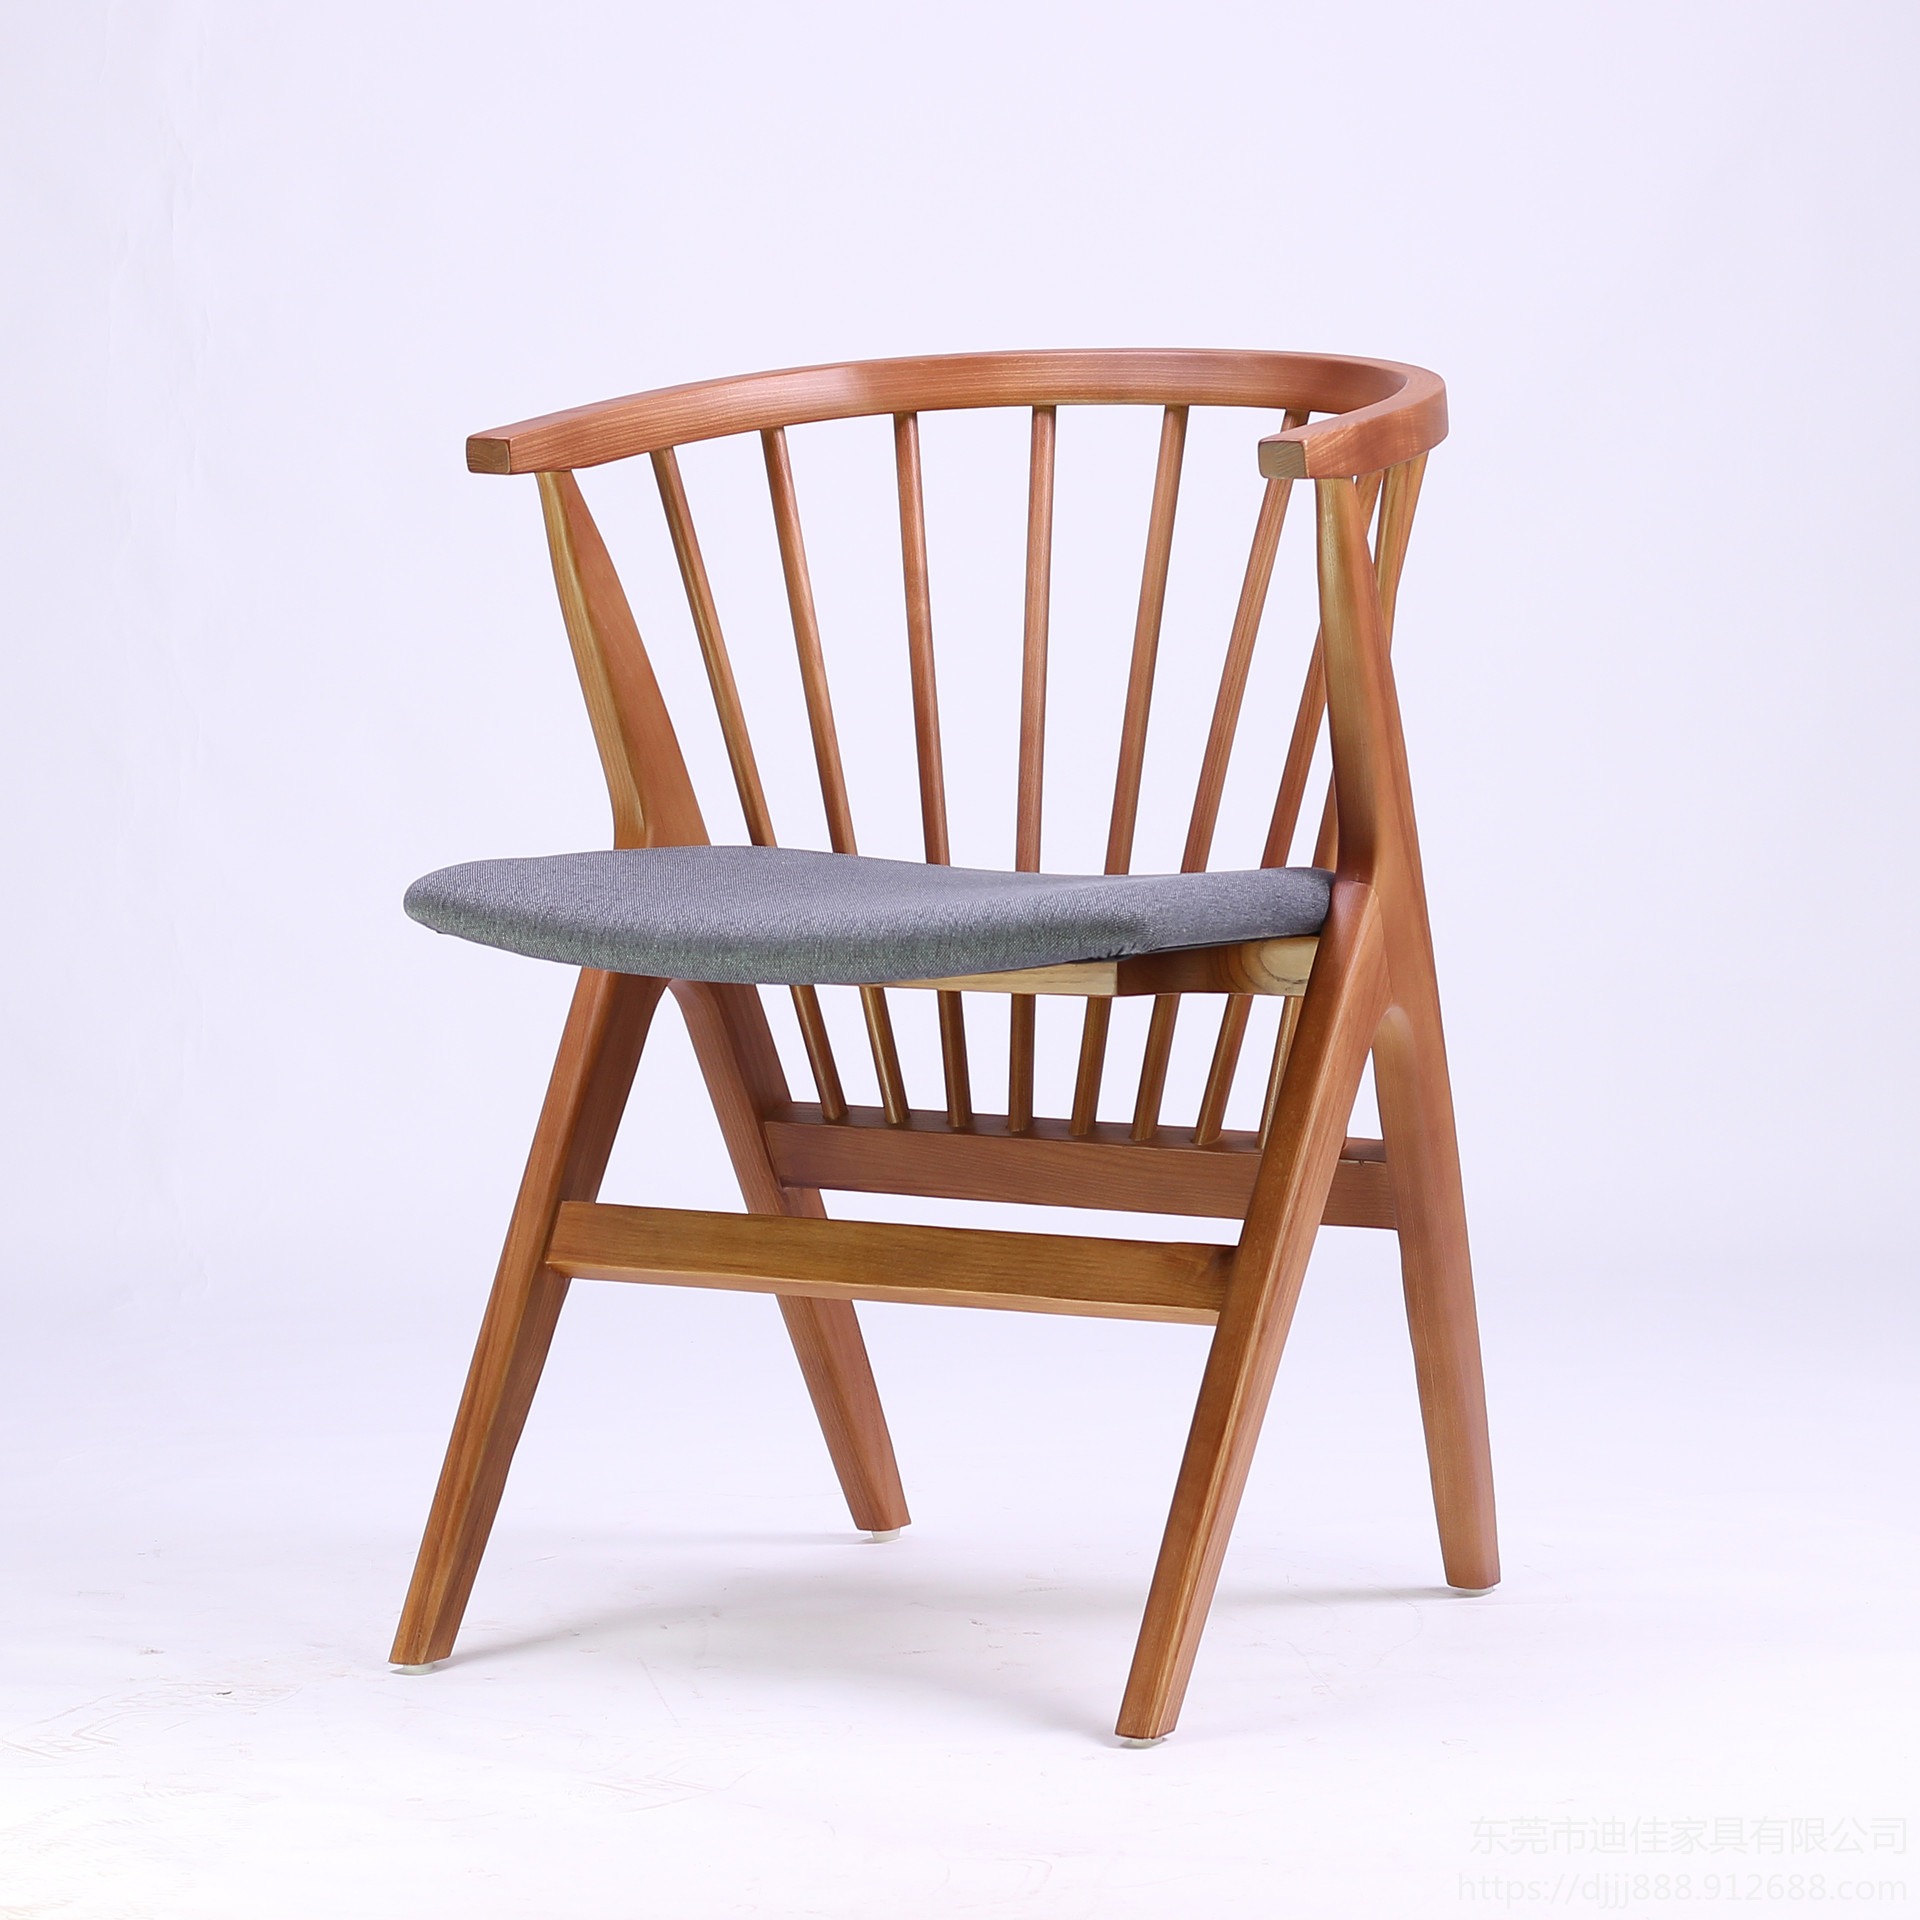 东莞实木耐用凳子 耐用餐桌椅 餐桌 餐椅  实木餐椅 中餐餐椅 木质餐椅 工程定制餐厅家具 质量保证